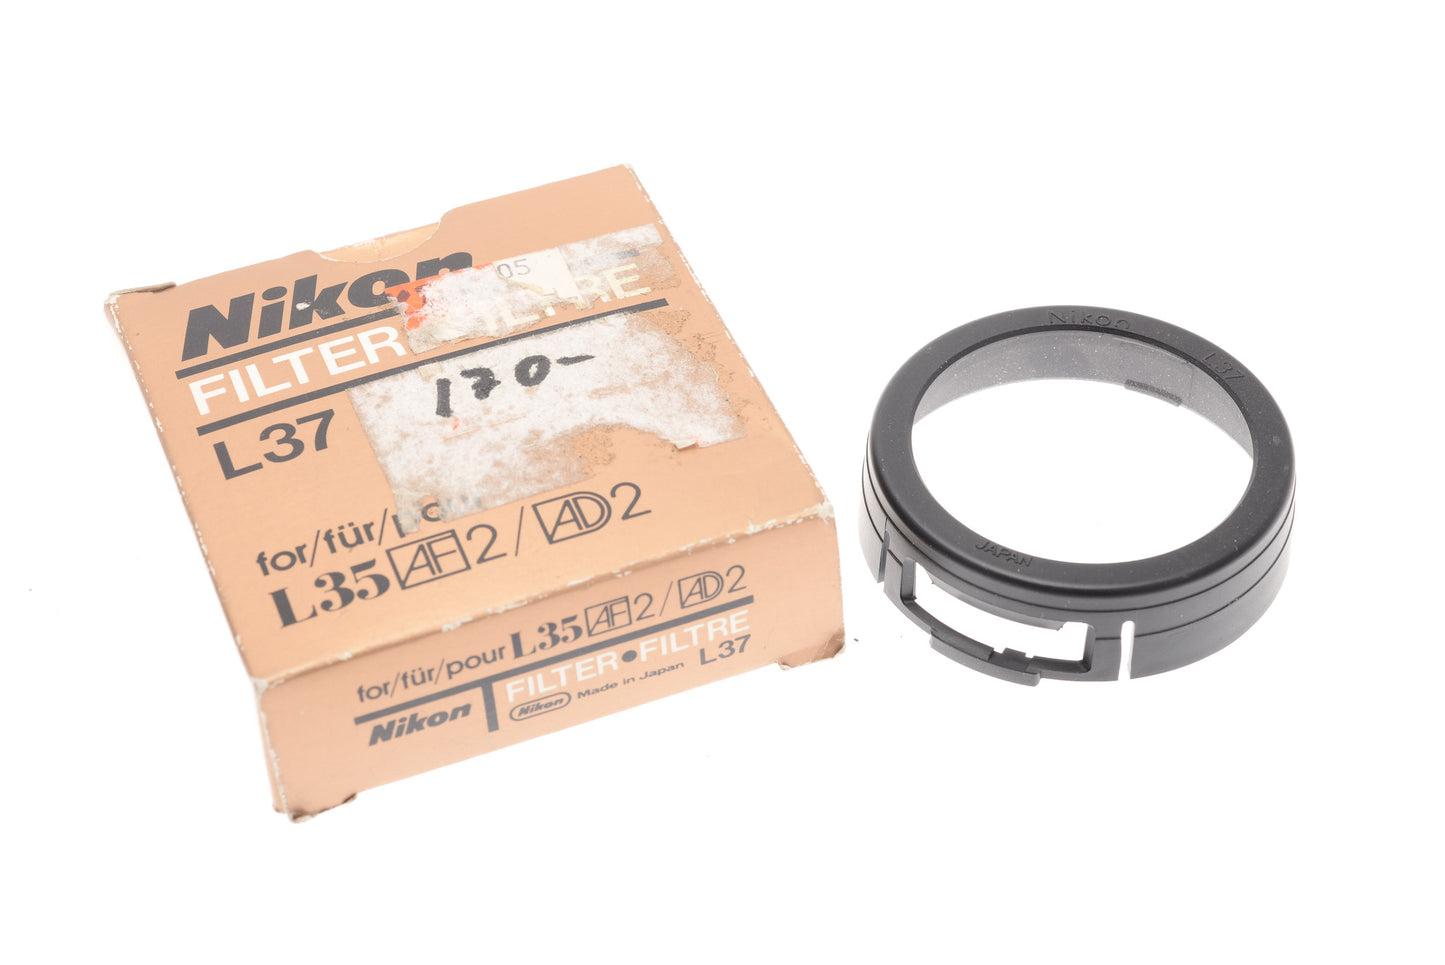 Nikon L37 UV Filter for L35AF2 / AD2